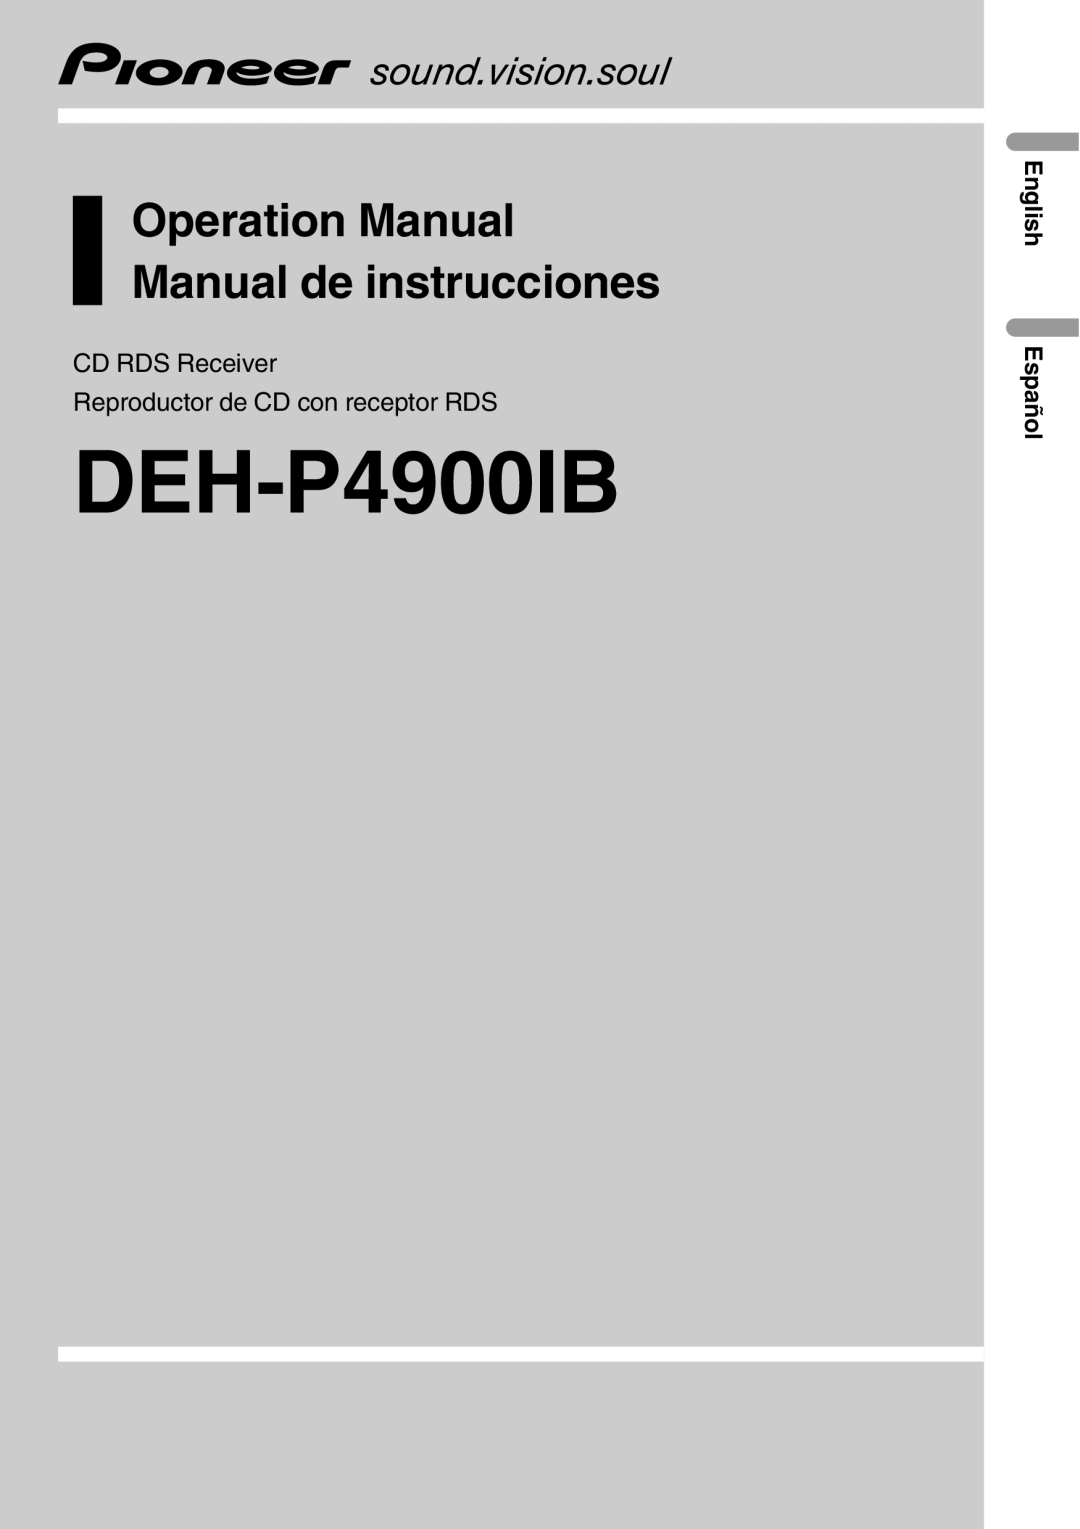 Pioneer DEH-P4900IB operation manual CD RDS Receiver, Reproductor de CD con receptor RDS, English Español 